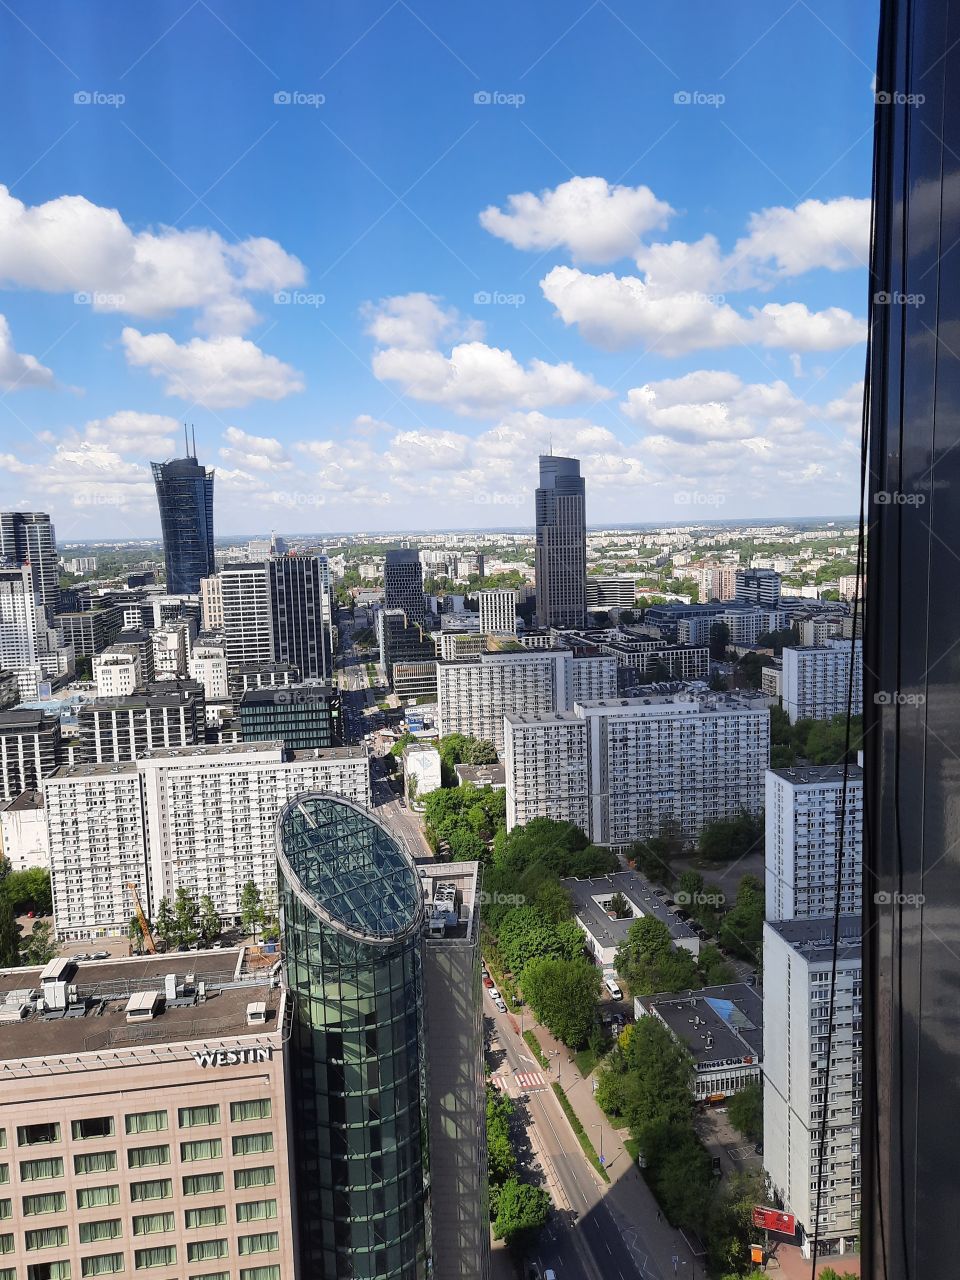 city vue from skyscraper window